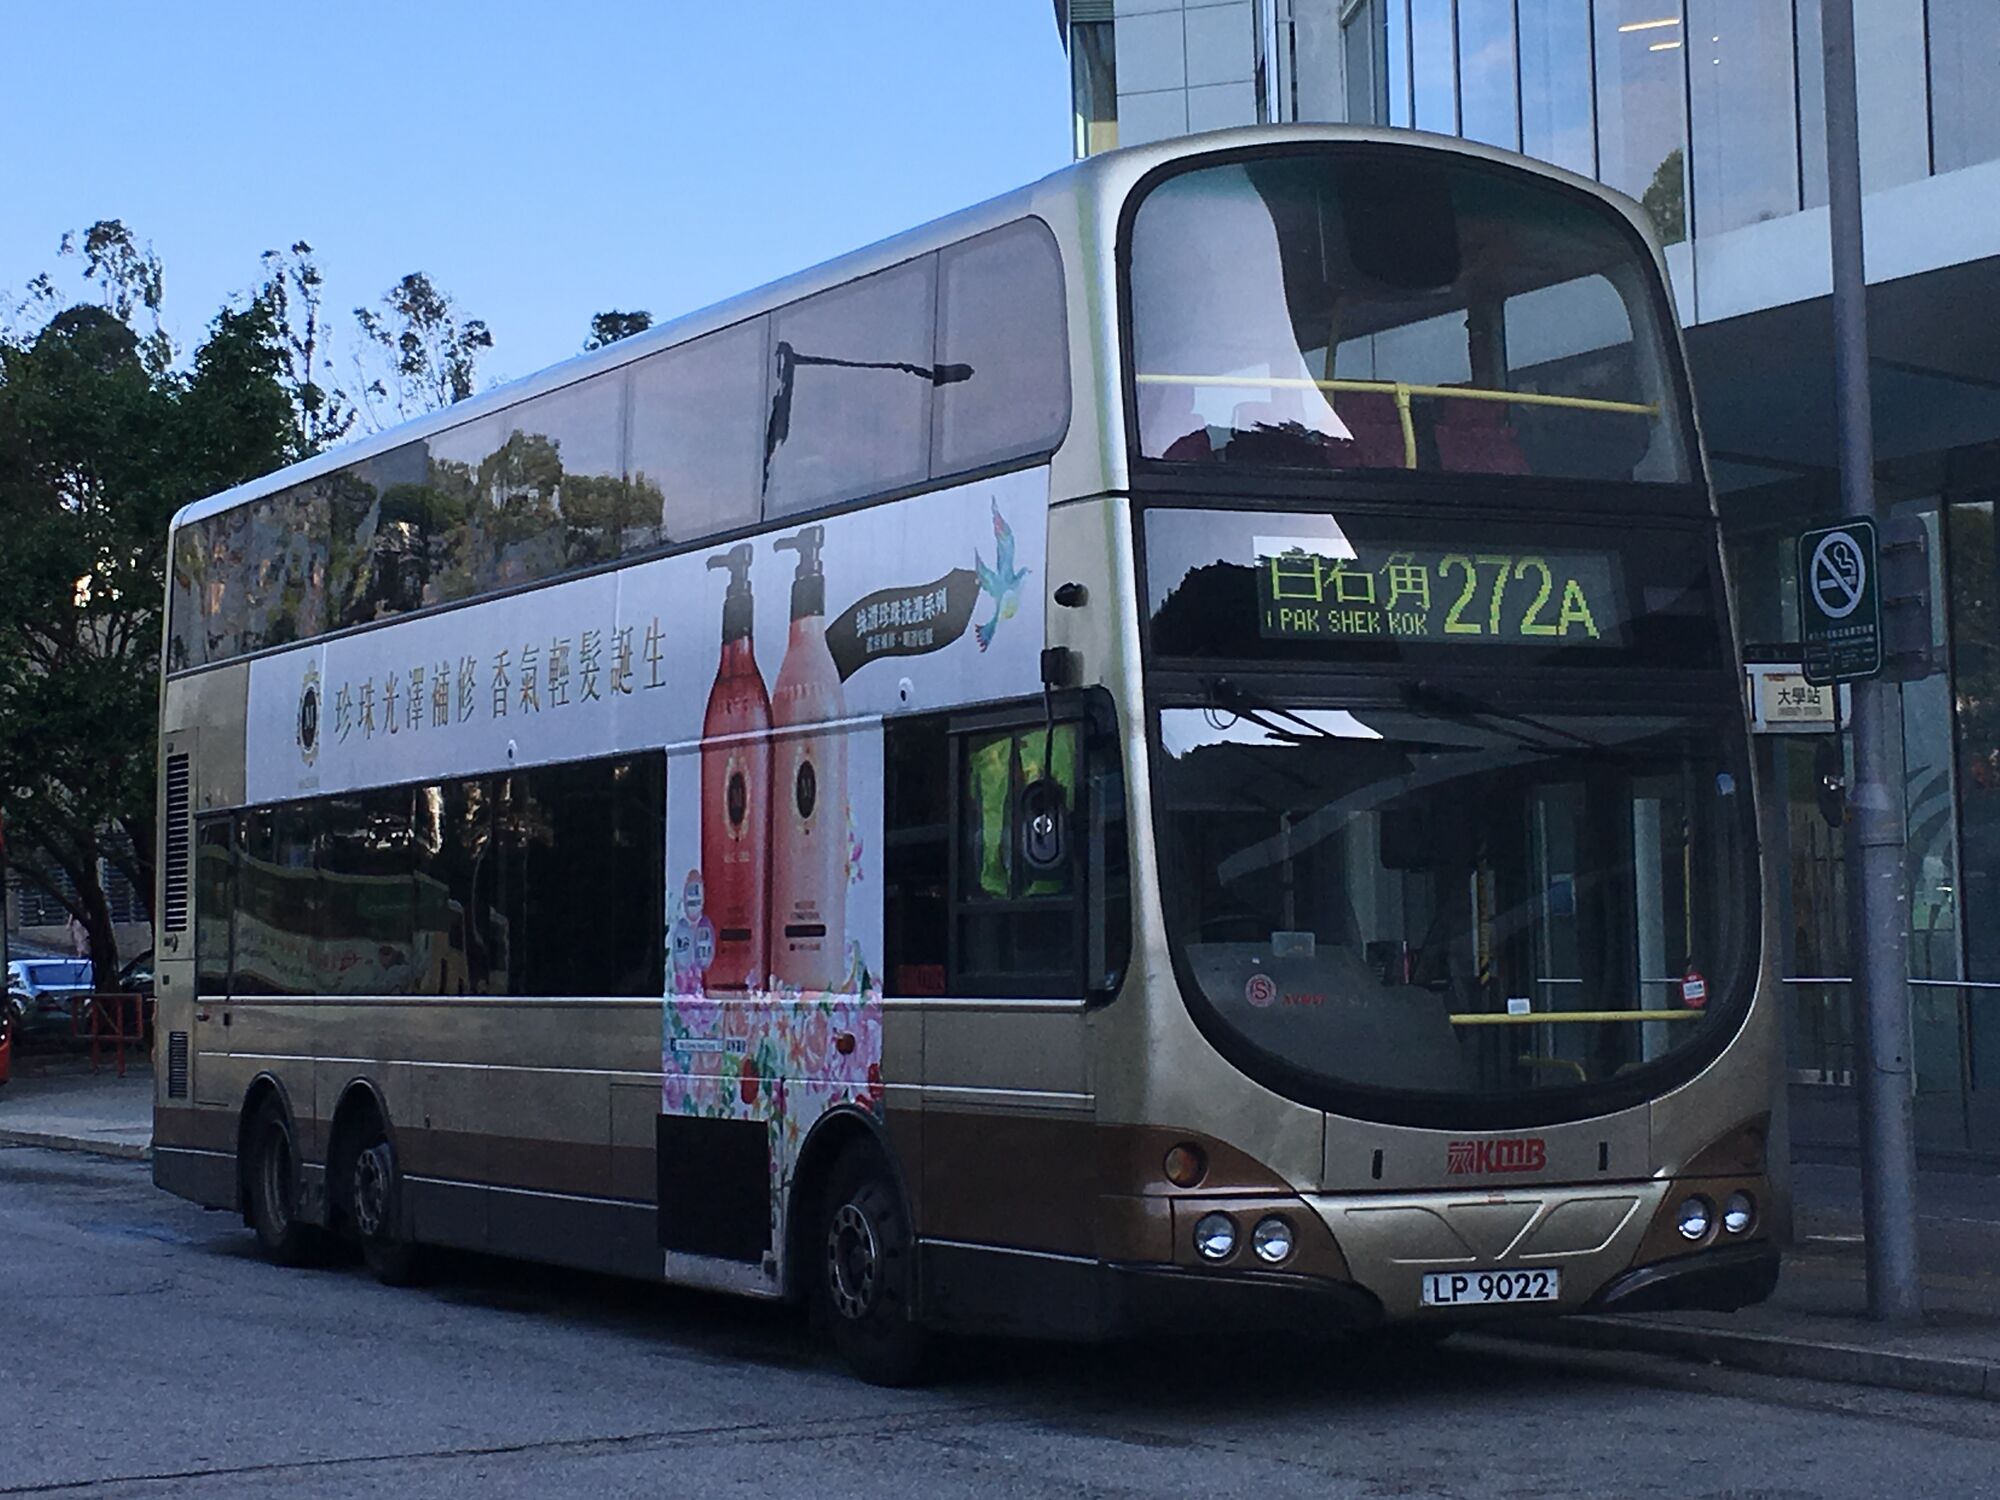 九巴272a線 香港巴士大典 Fandom